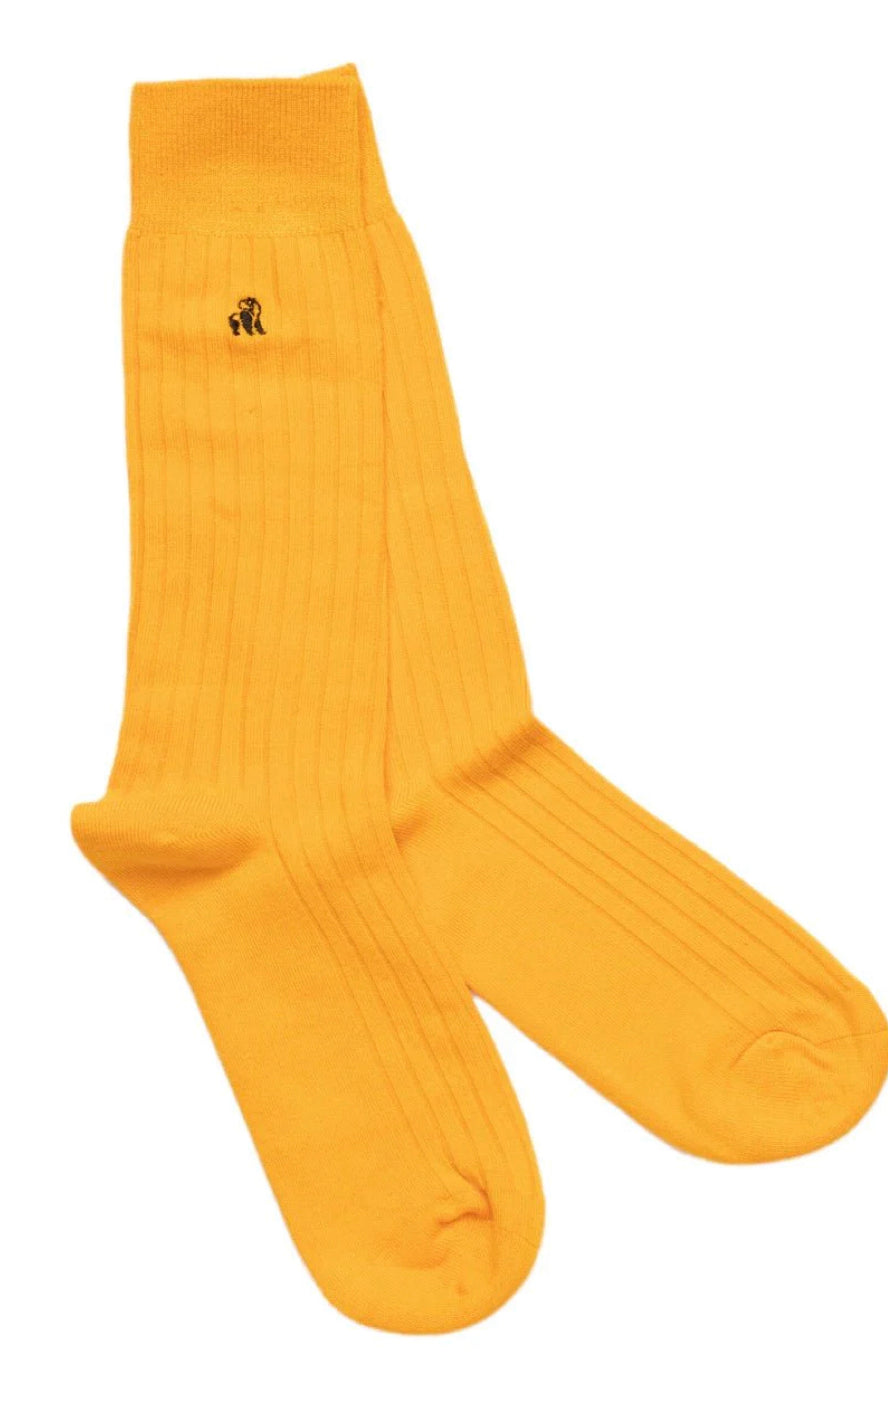 Swole Panda Yellow Socks